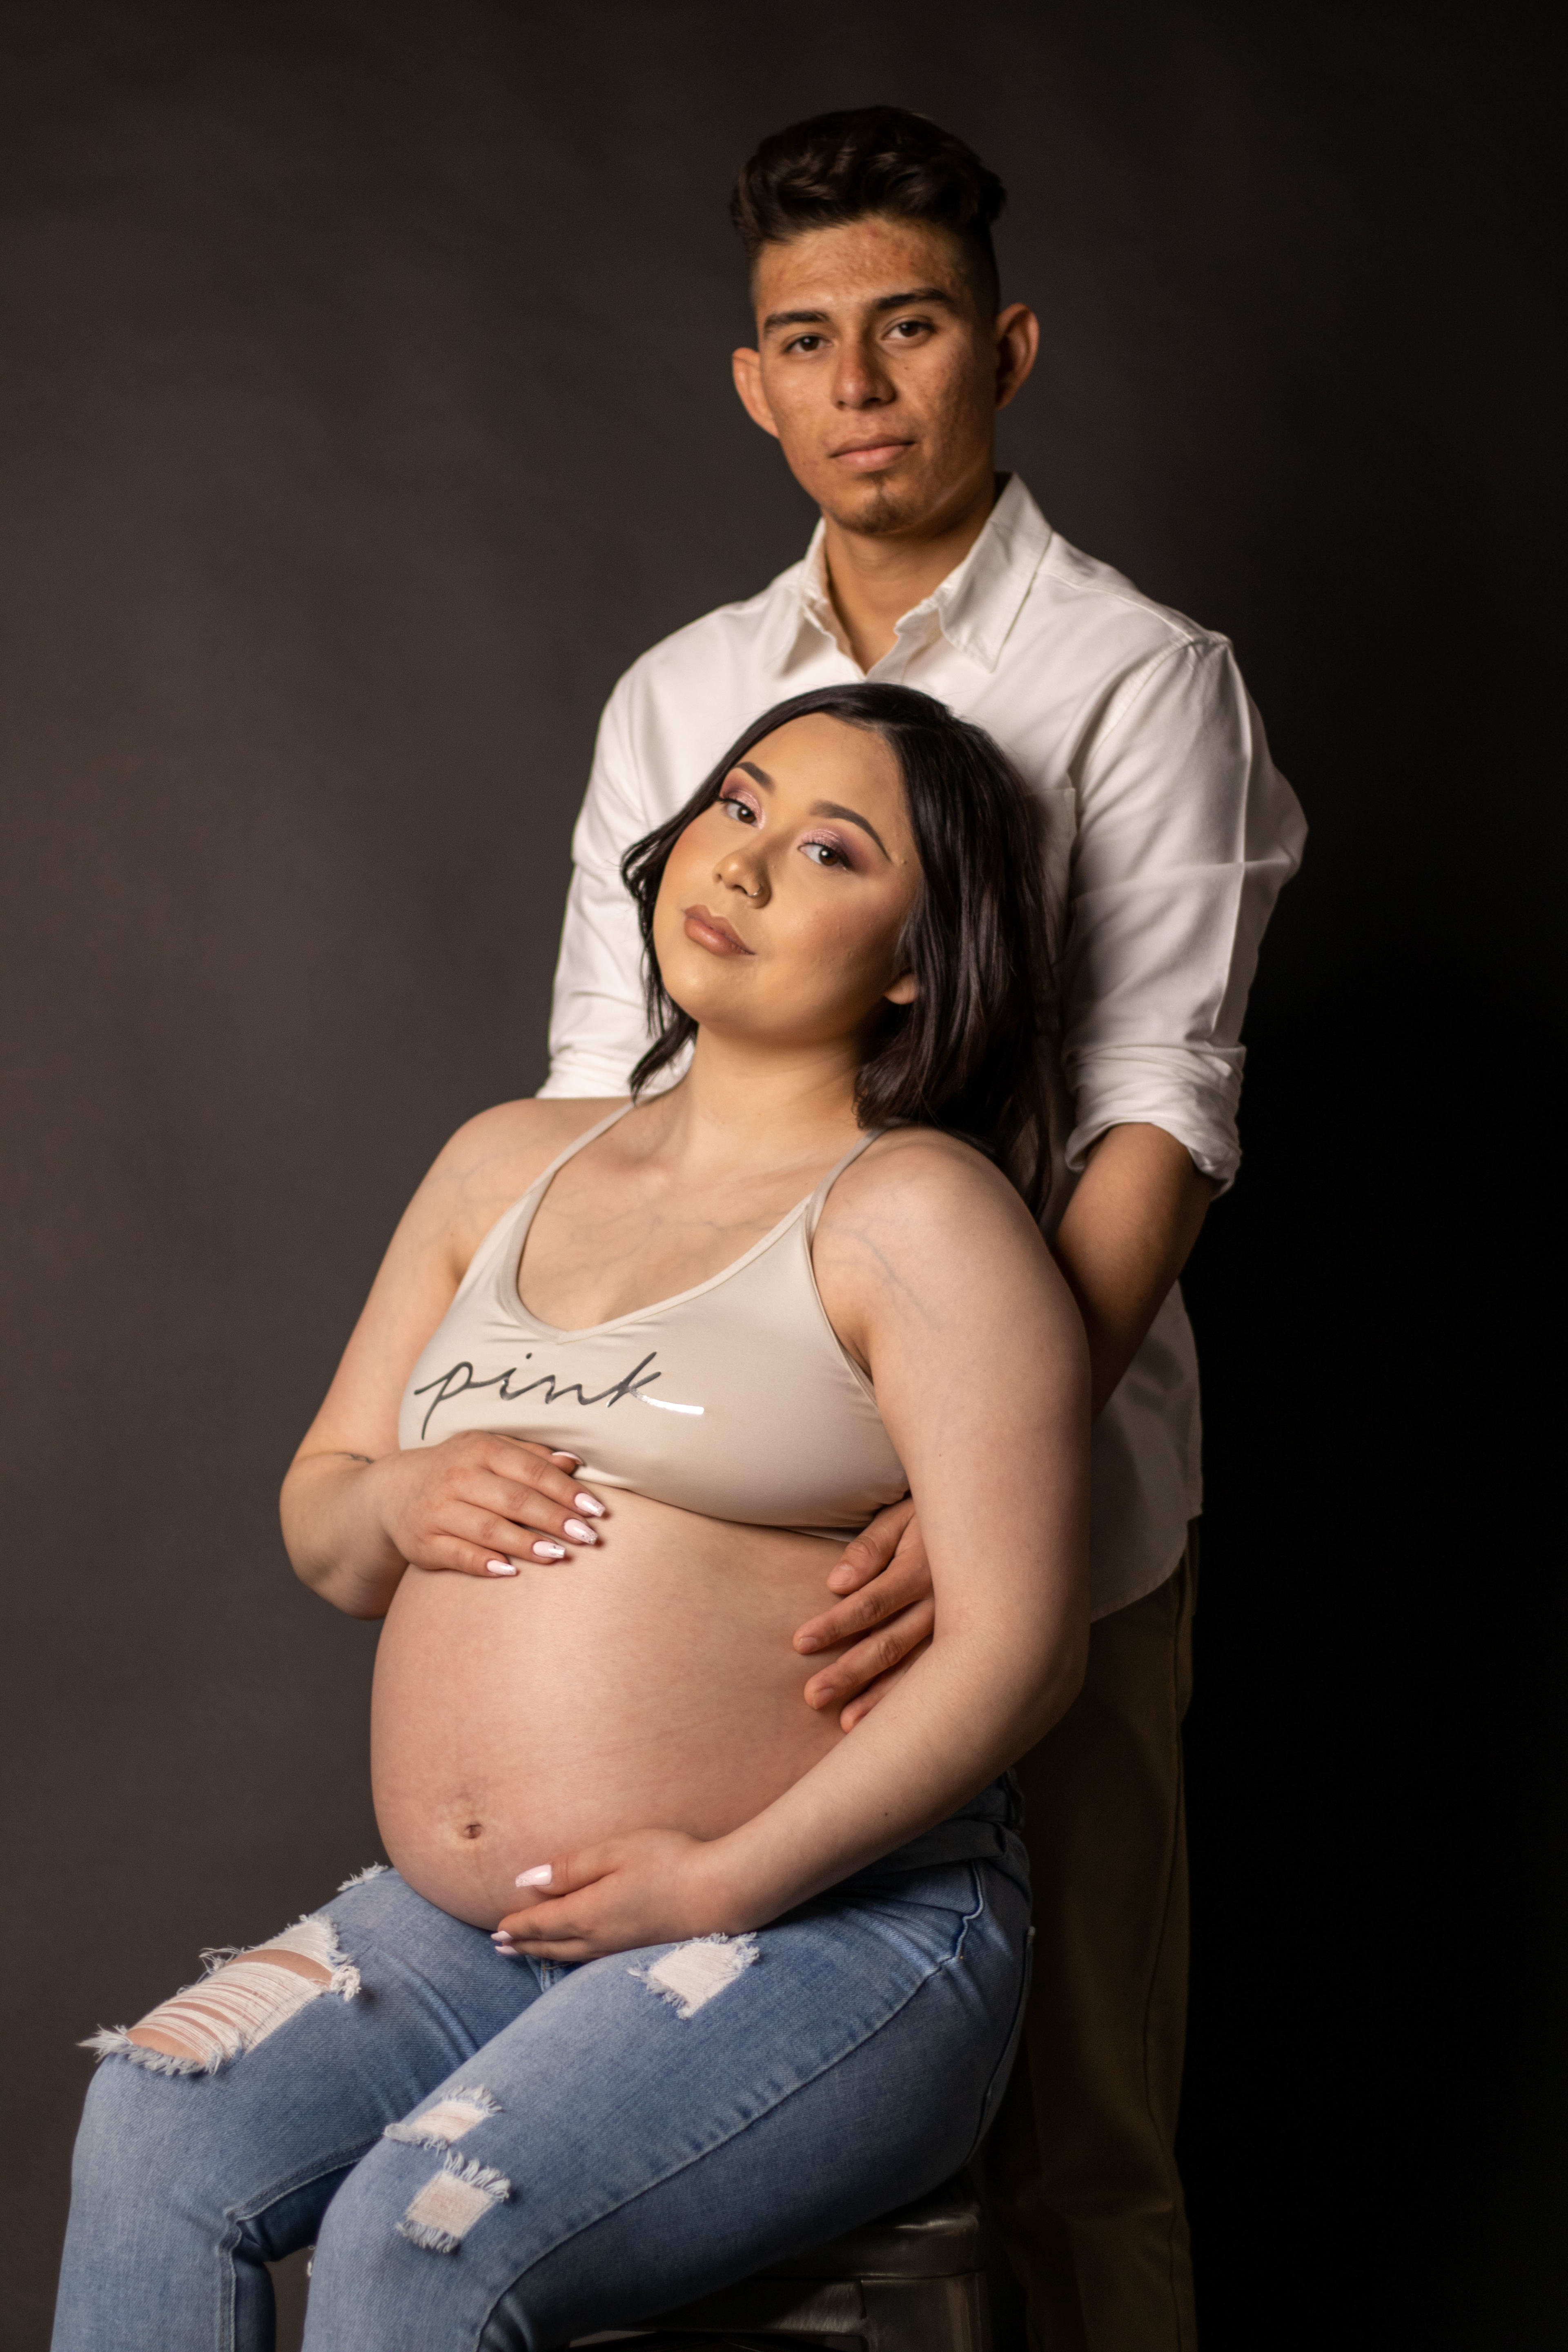 Schwangerschaftsfotoshooting einer schwangeren Frau auf einem Stuhl, während ein Mann sie von hinten umarmt.